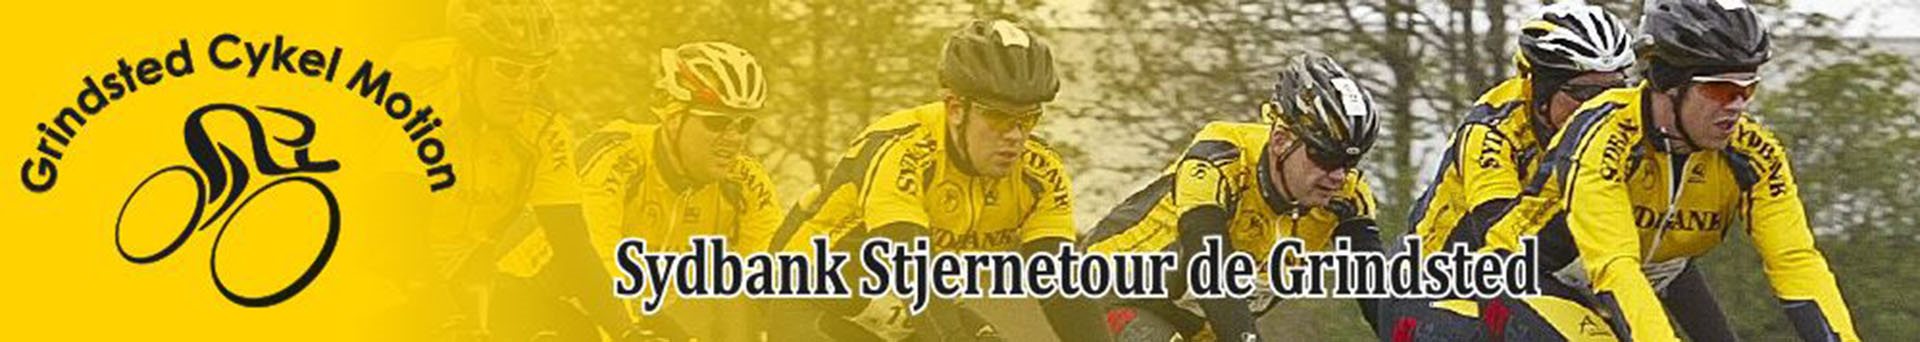 Sydbank Stjernetour de Grindsted 2021